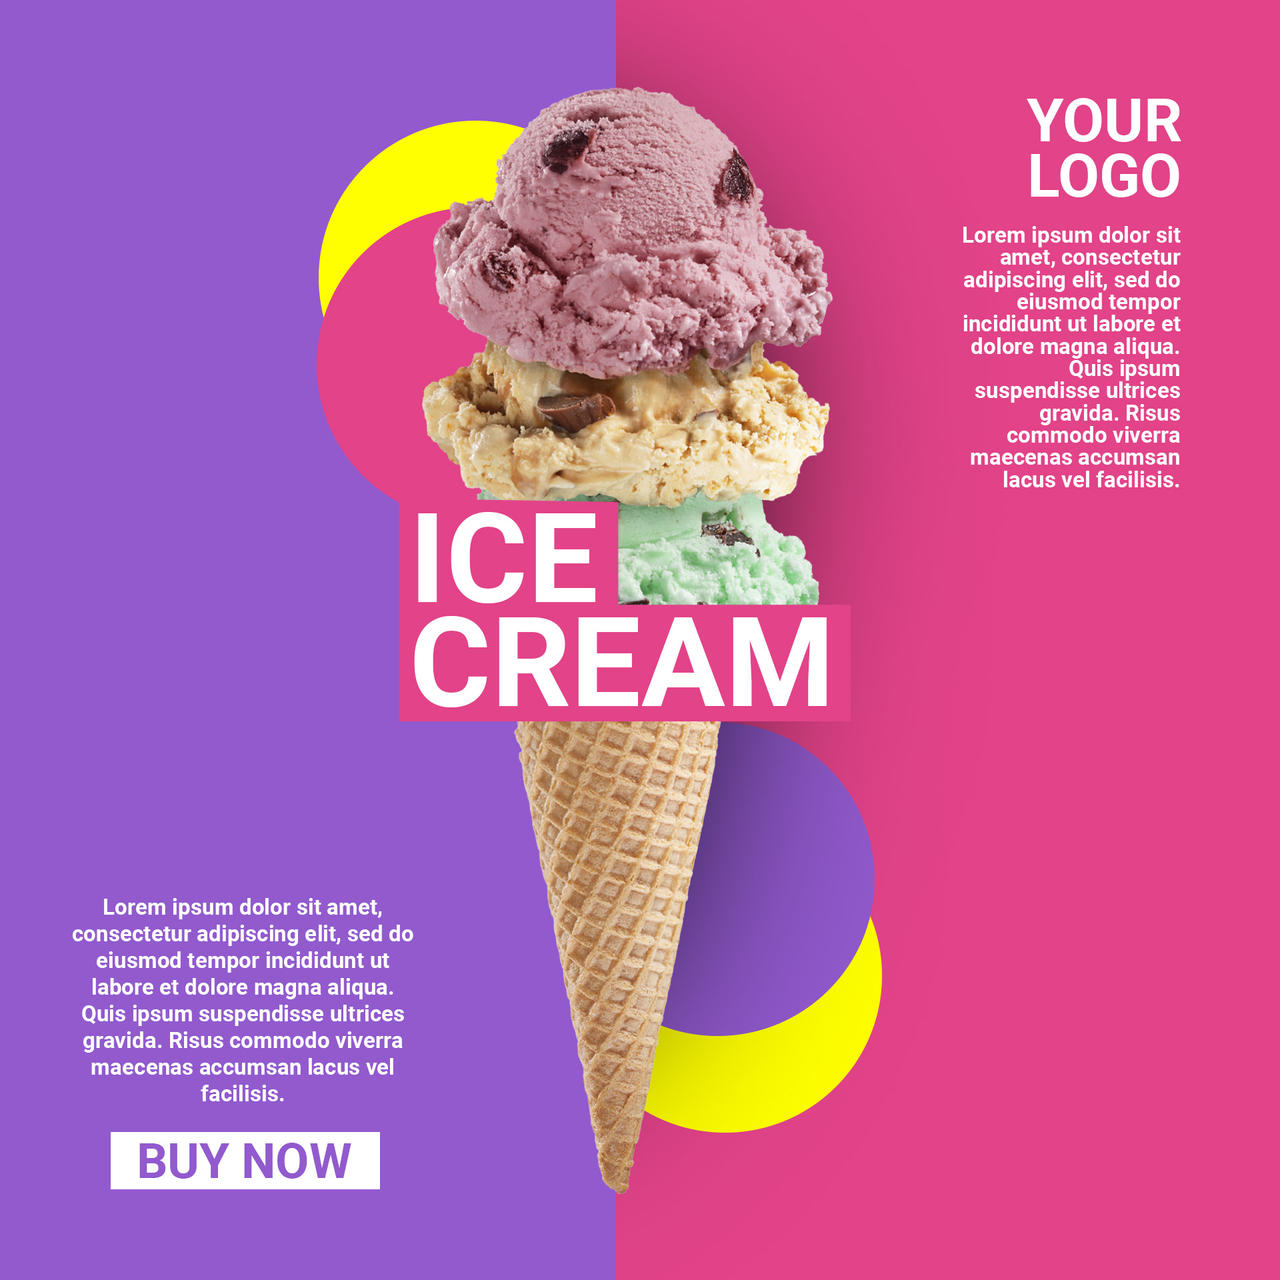 Ice Cream Poster Design by Sintukumar on DeviantArt